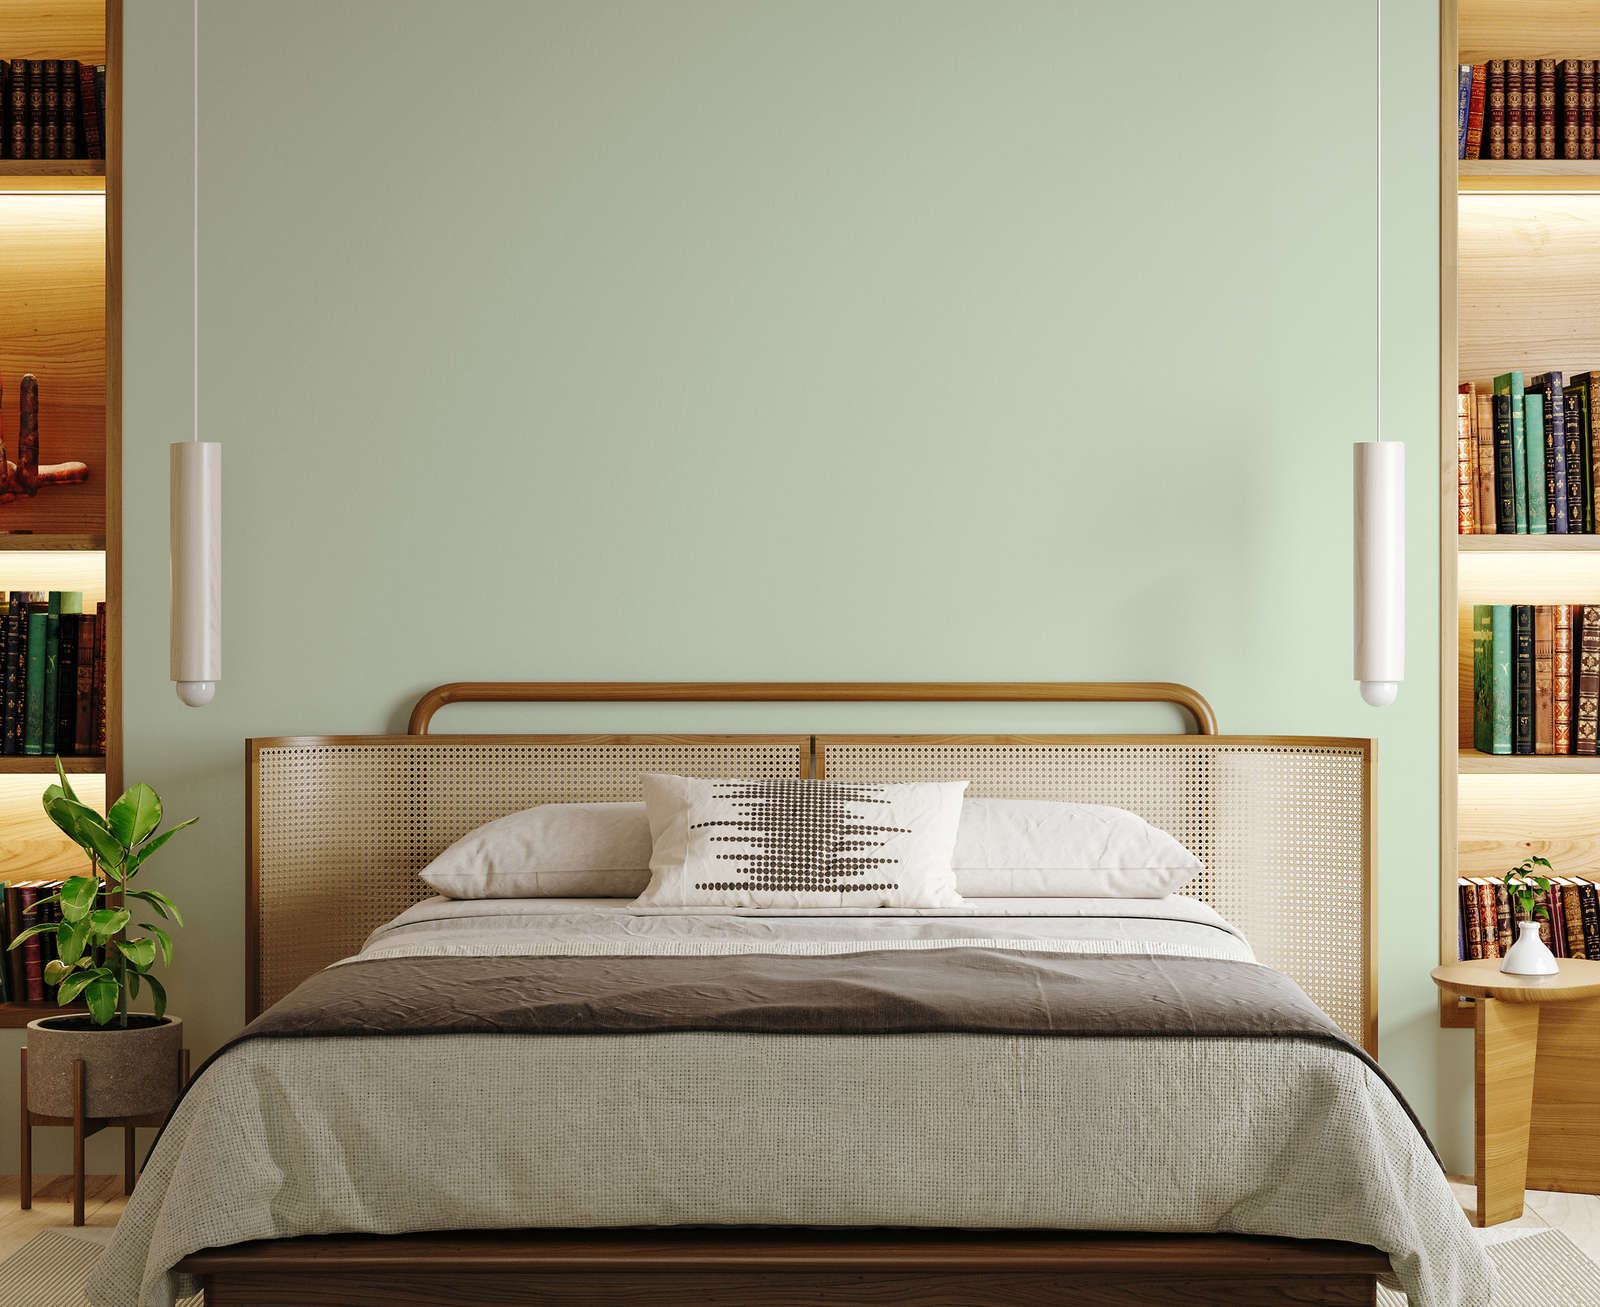             Premium Wandfarbe aufweckendes Pastellgrün »Sweet Sage« NW400 – 2,5 Liter
        